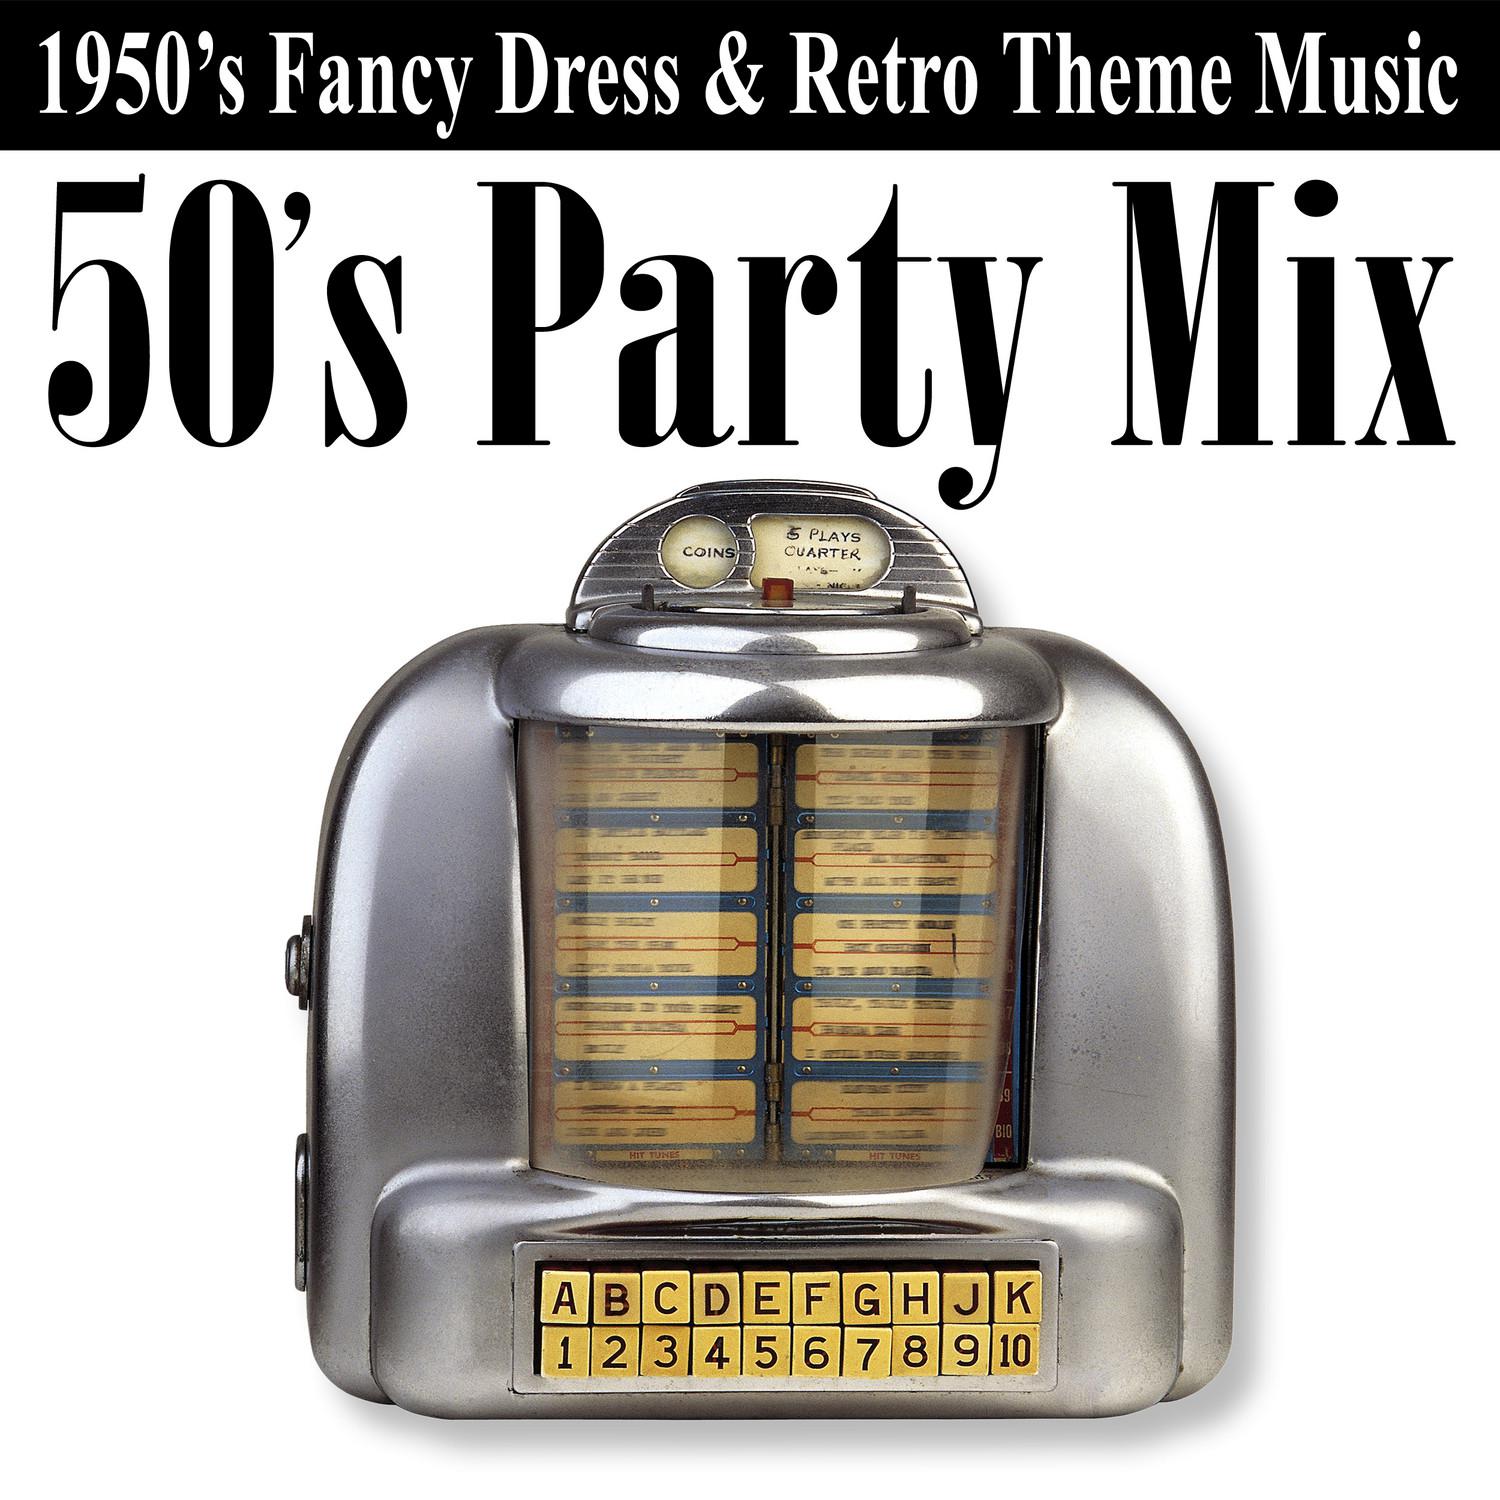 50's Party Mix (1950's Fancy Dress & Retro Theme Music)